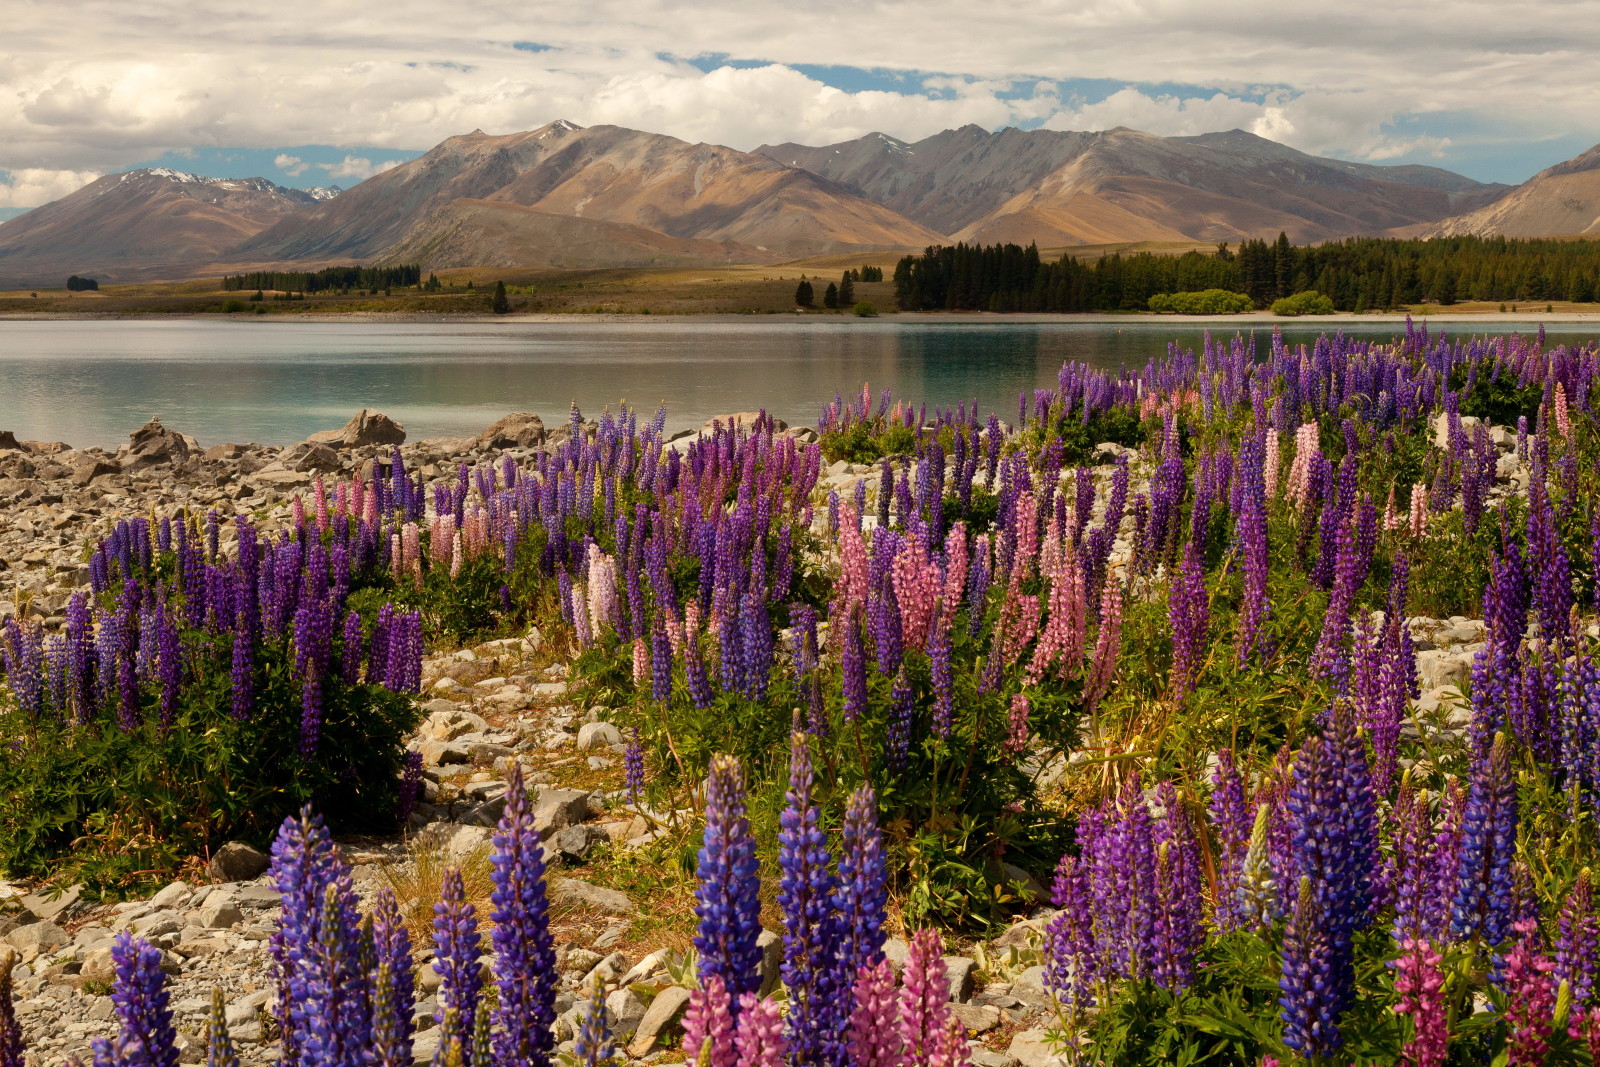 ทะเลสาป, หิน, ดอกไม้, ภูเขา, นิวซีแลนด์, ต้นเดลฟีเนียม, ทะเลสาบเทกาโป, พืชชนิดหนึ่ง